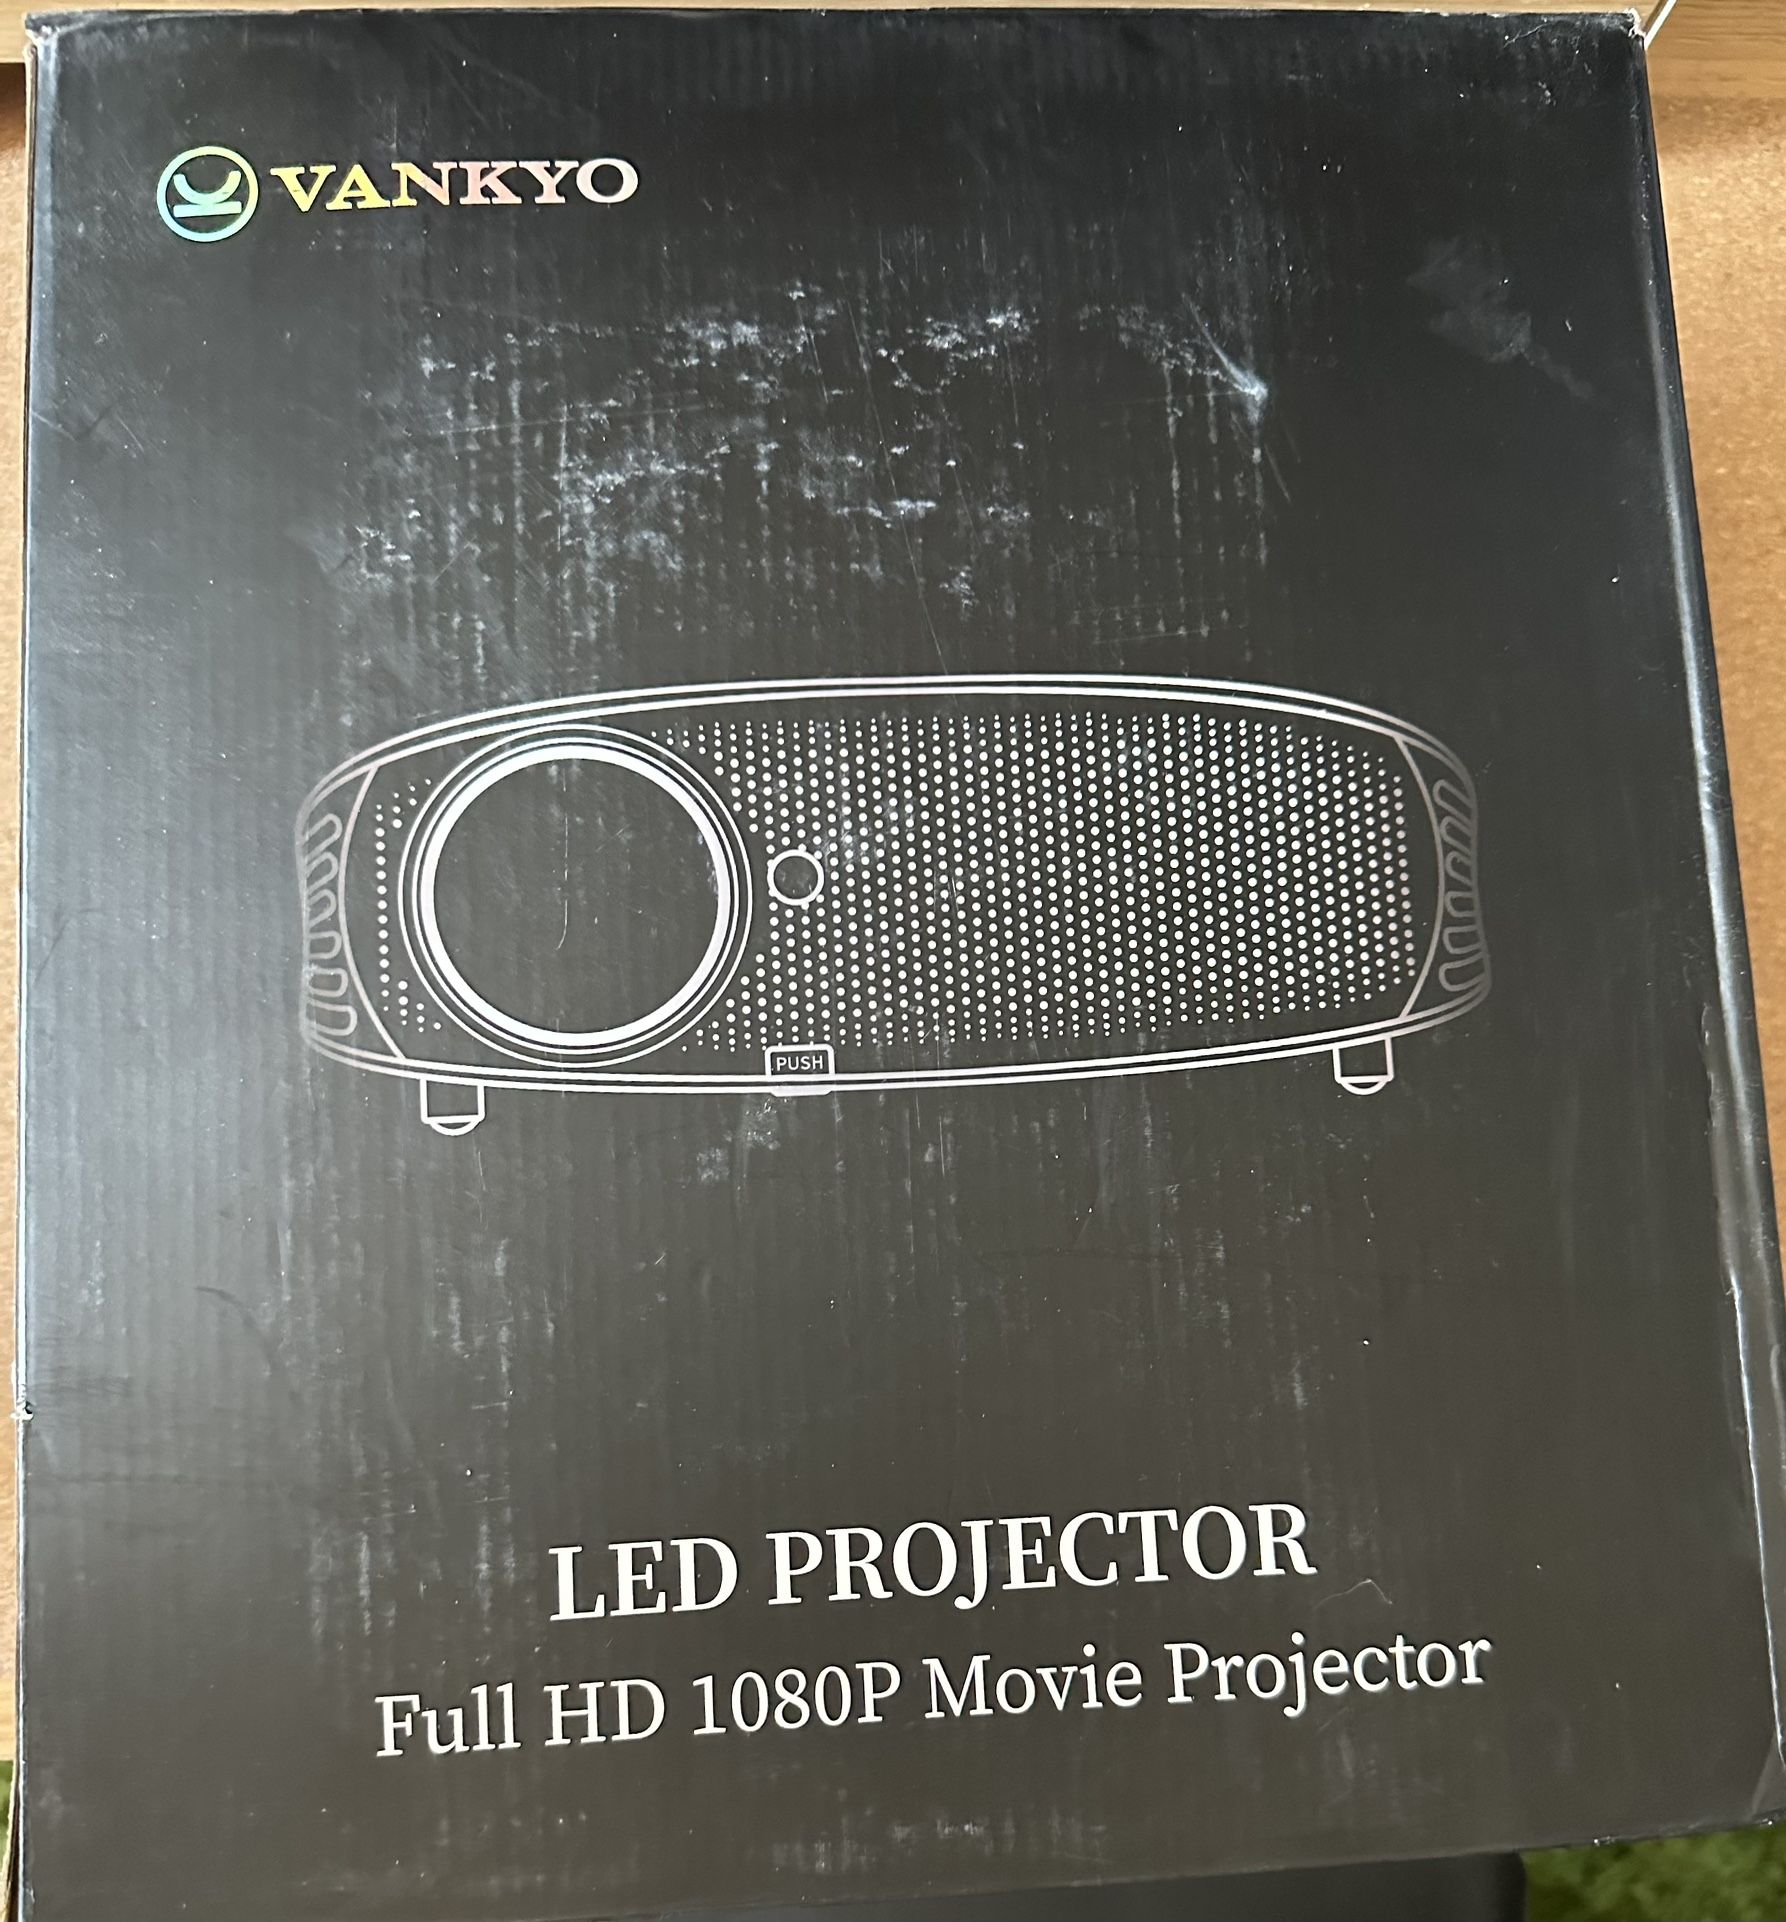 Vankyo HD 1080P Projector